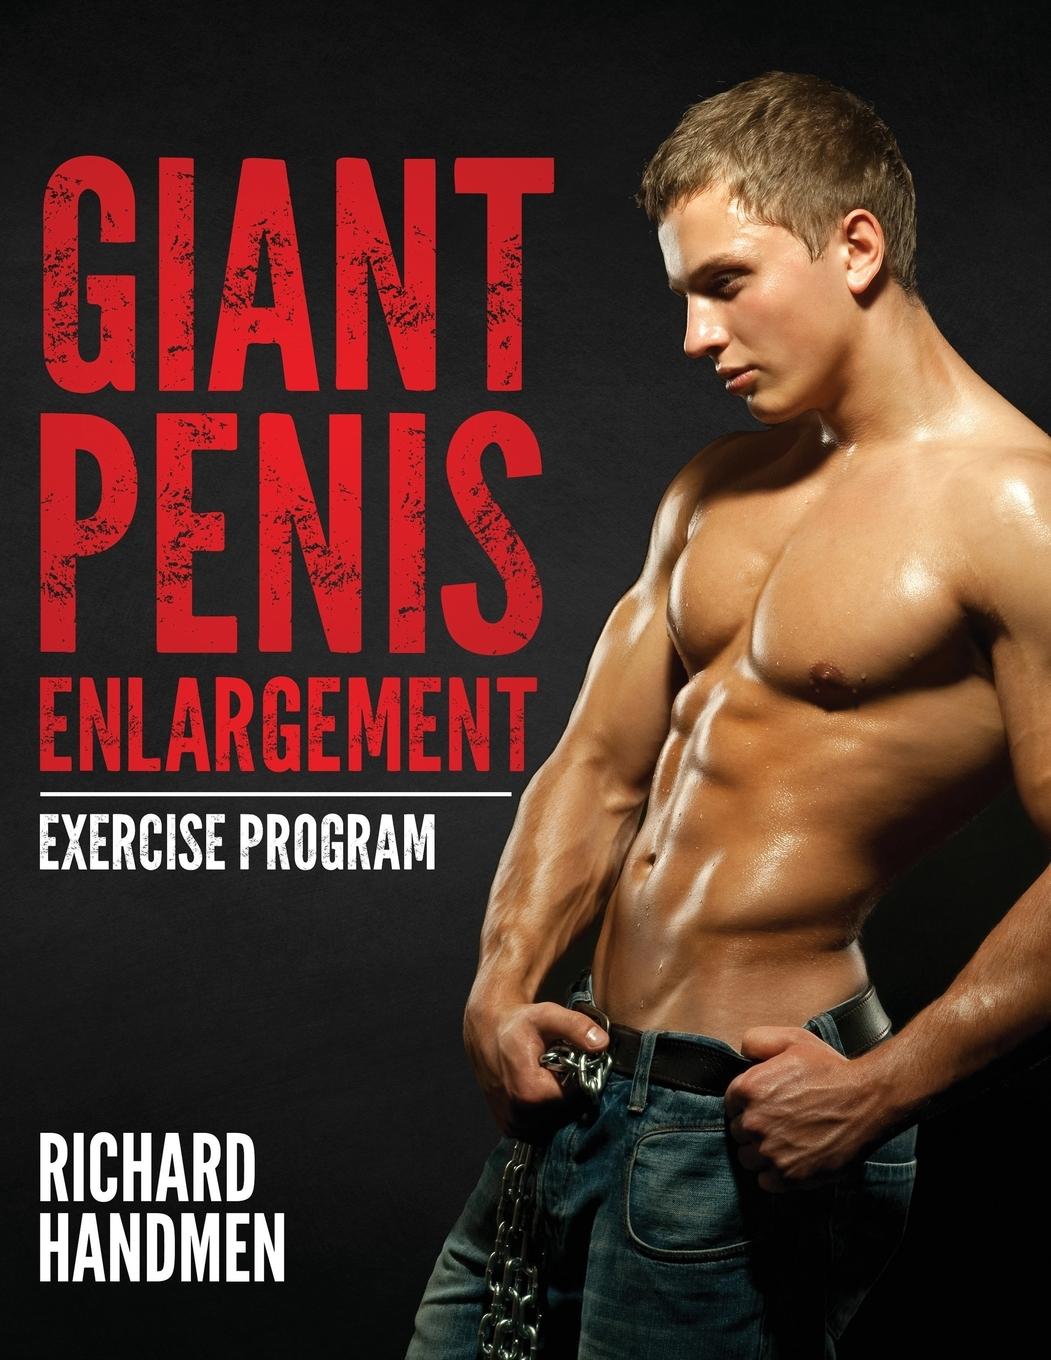 Giant Penis Enlargement Exercise Program - Handmen, Richard